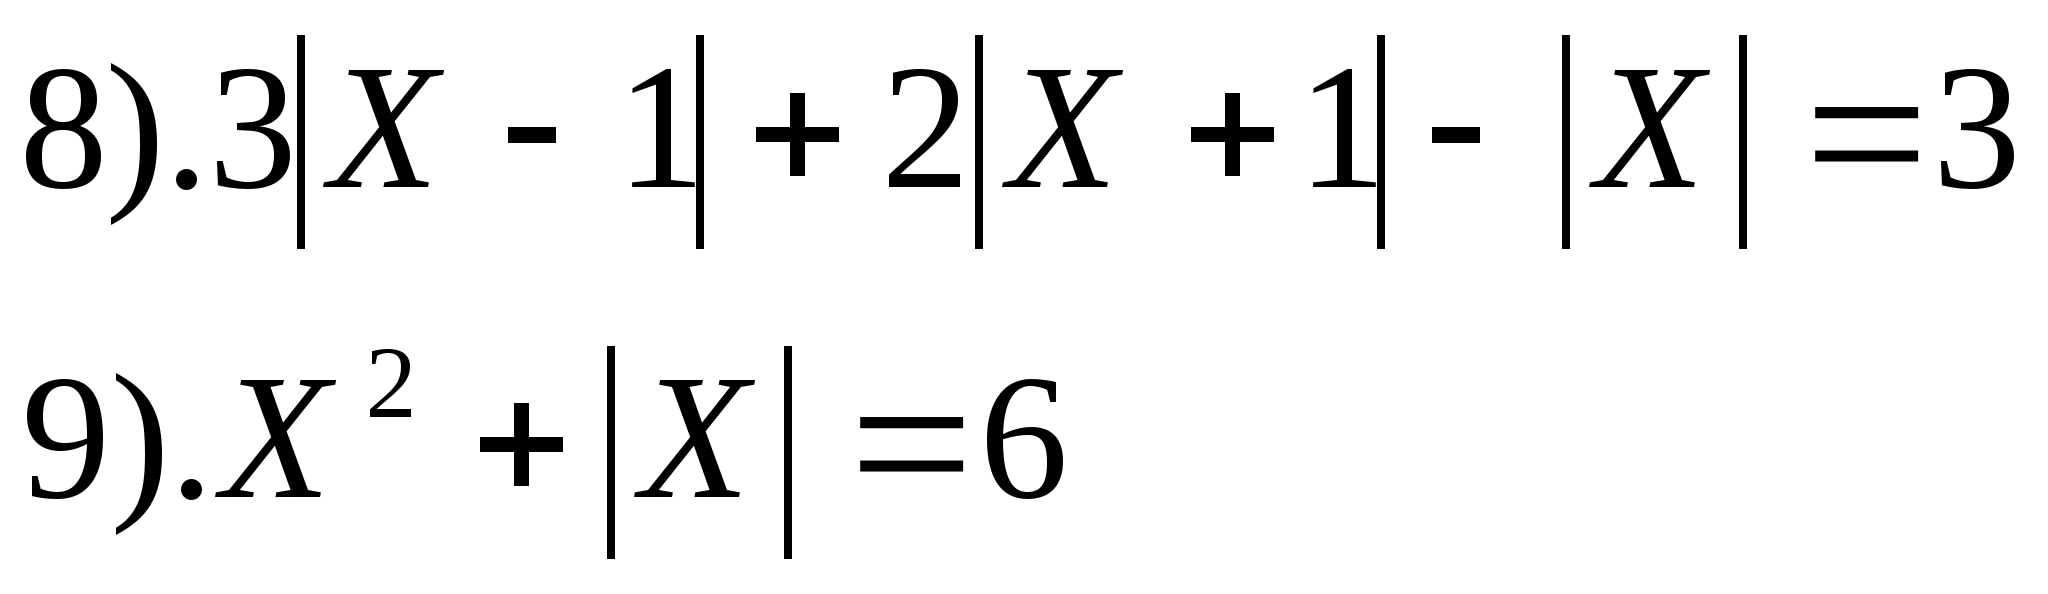 Контрольная работа по алгебре 11 класс по теме:Решение уравнений и неравенств с модулем